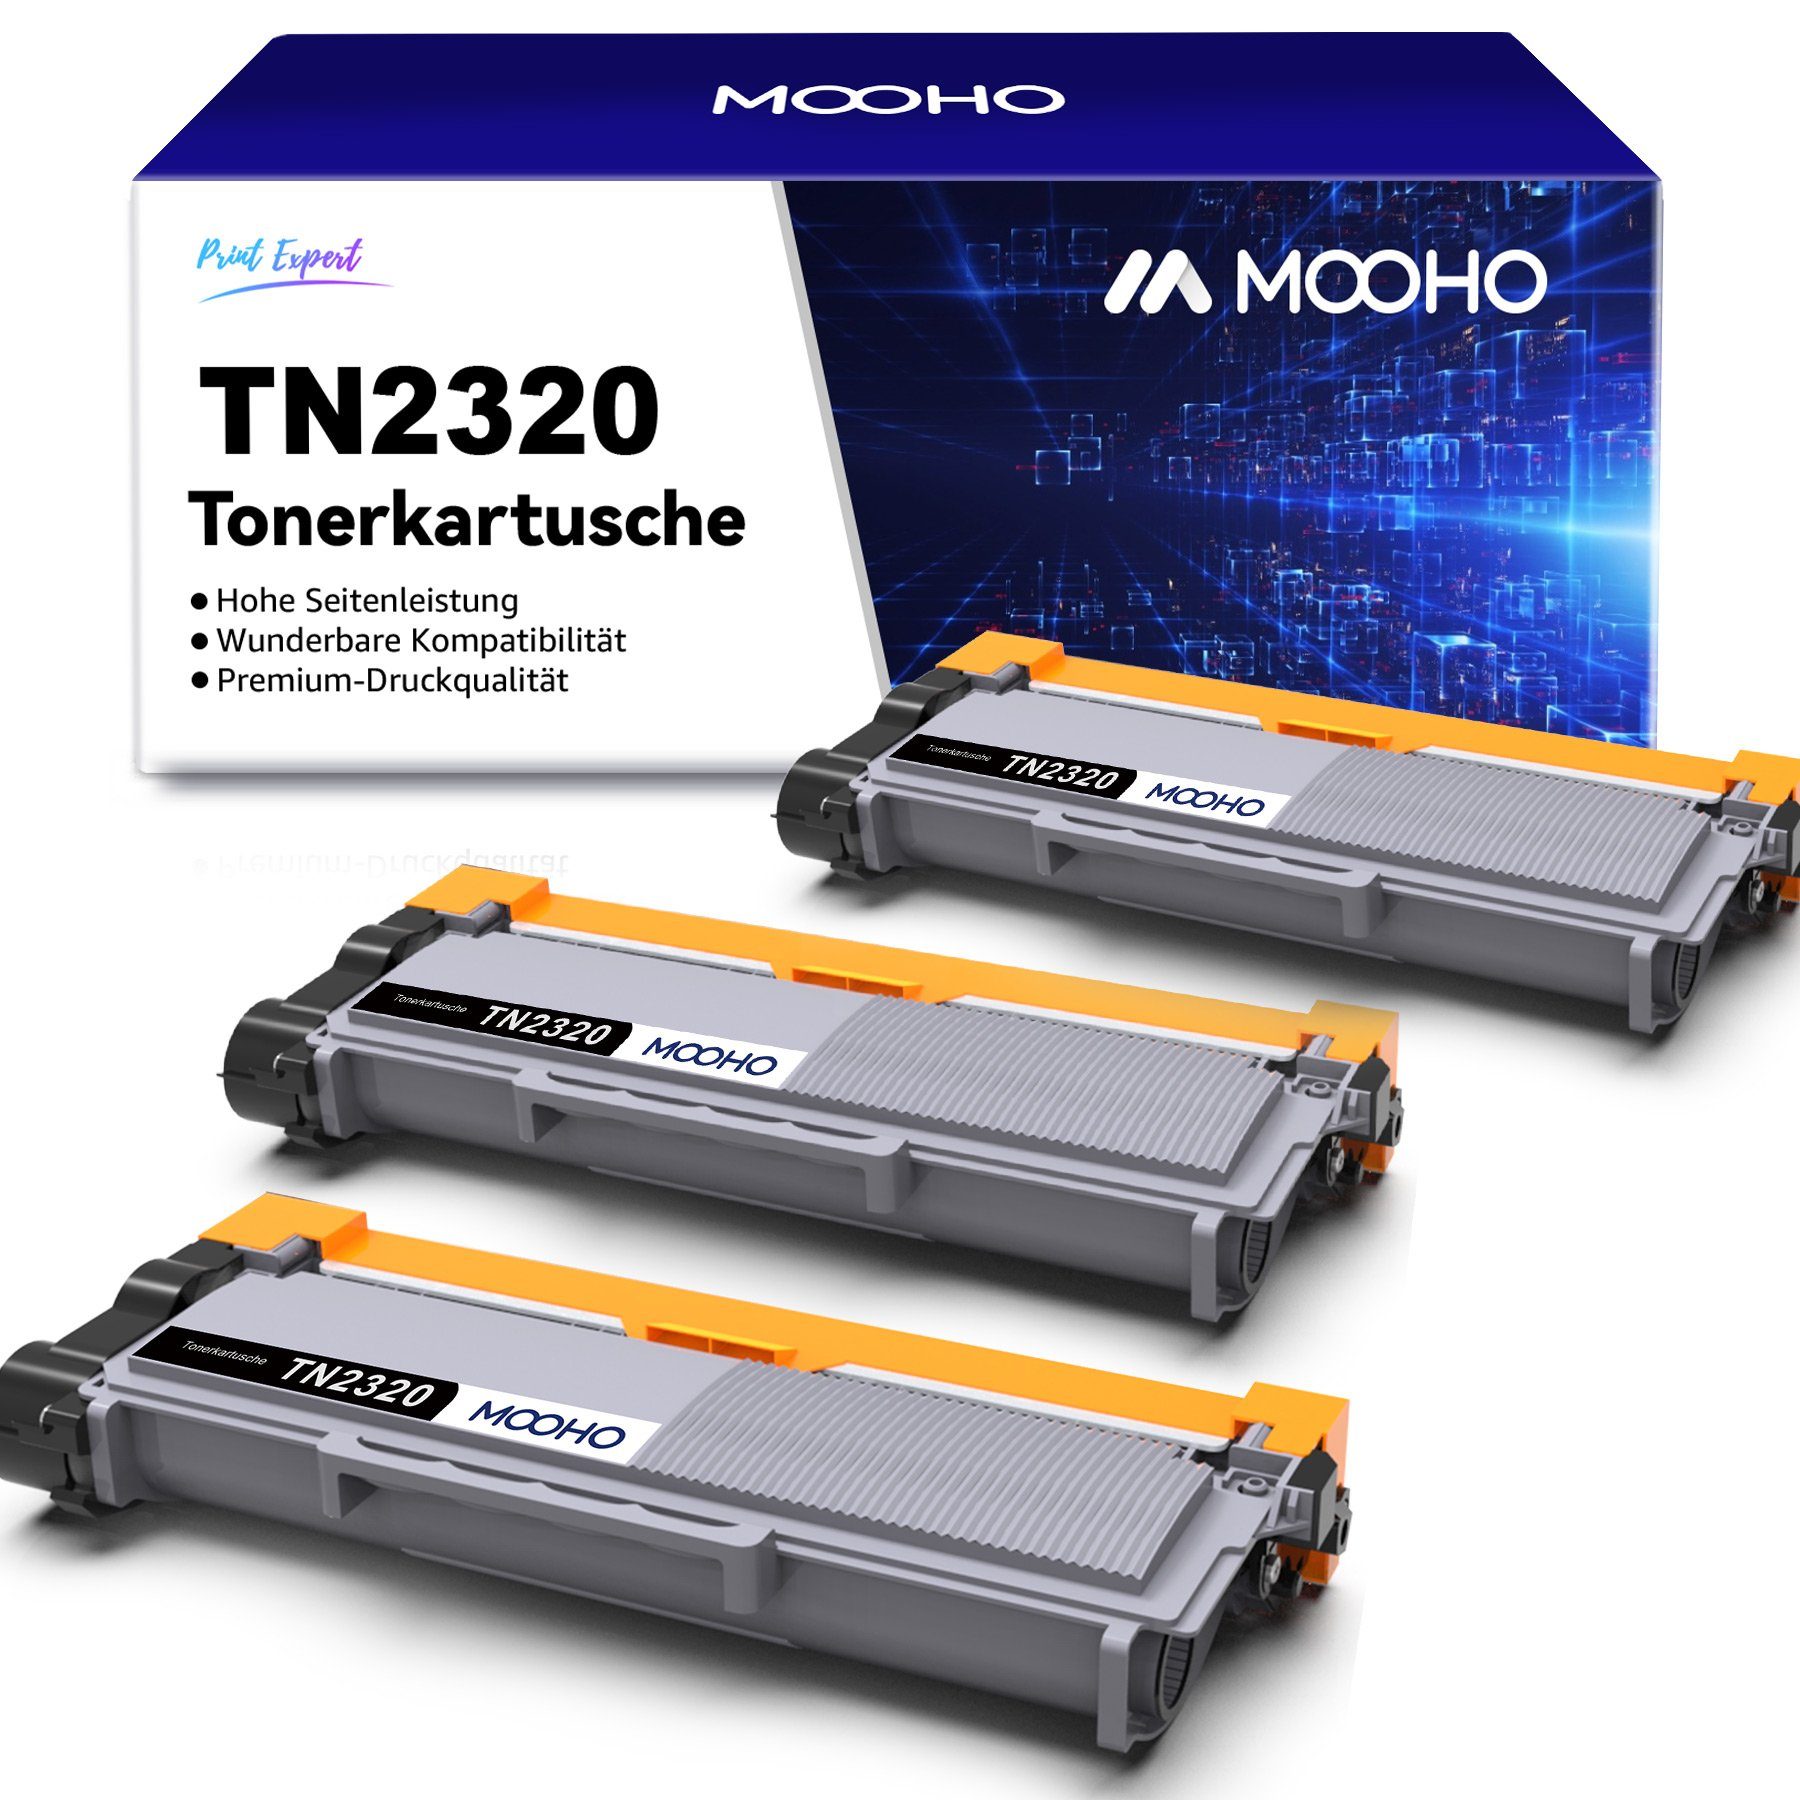 TN-2320 Toner Brother MFC-L2700DW für MOOHO TN 2310, L2700DN TN2320 HL-L2300D Tonerpatrone